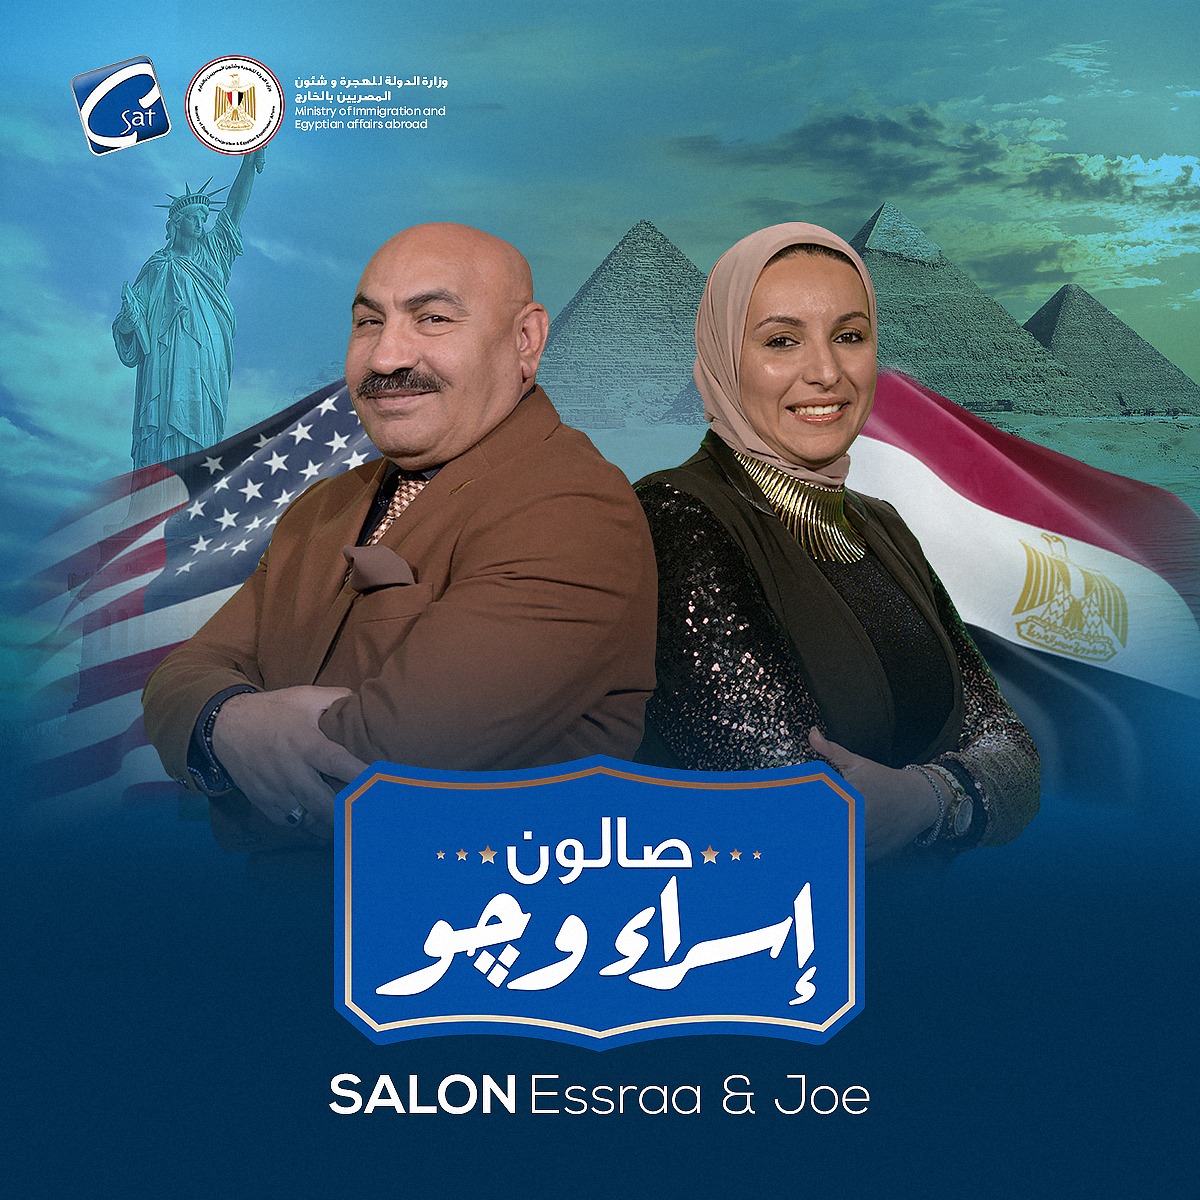 وزيرة الهجرة: إطلاق برنامج “صالون إسراء وجو” بقناة CSAT ….يتضمن رسائل للمصريين بالخارج للحفاظ على الهوية المصرية وترسيخ قيمة التعايش وقبول الآخر